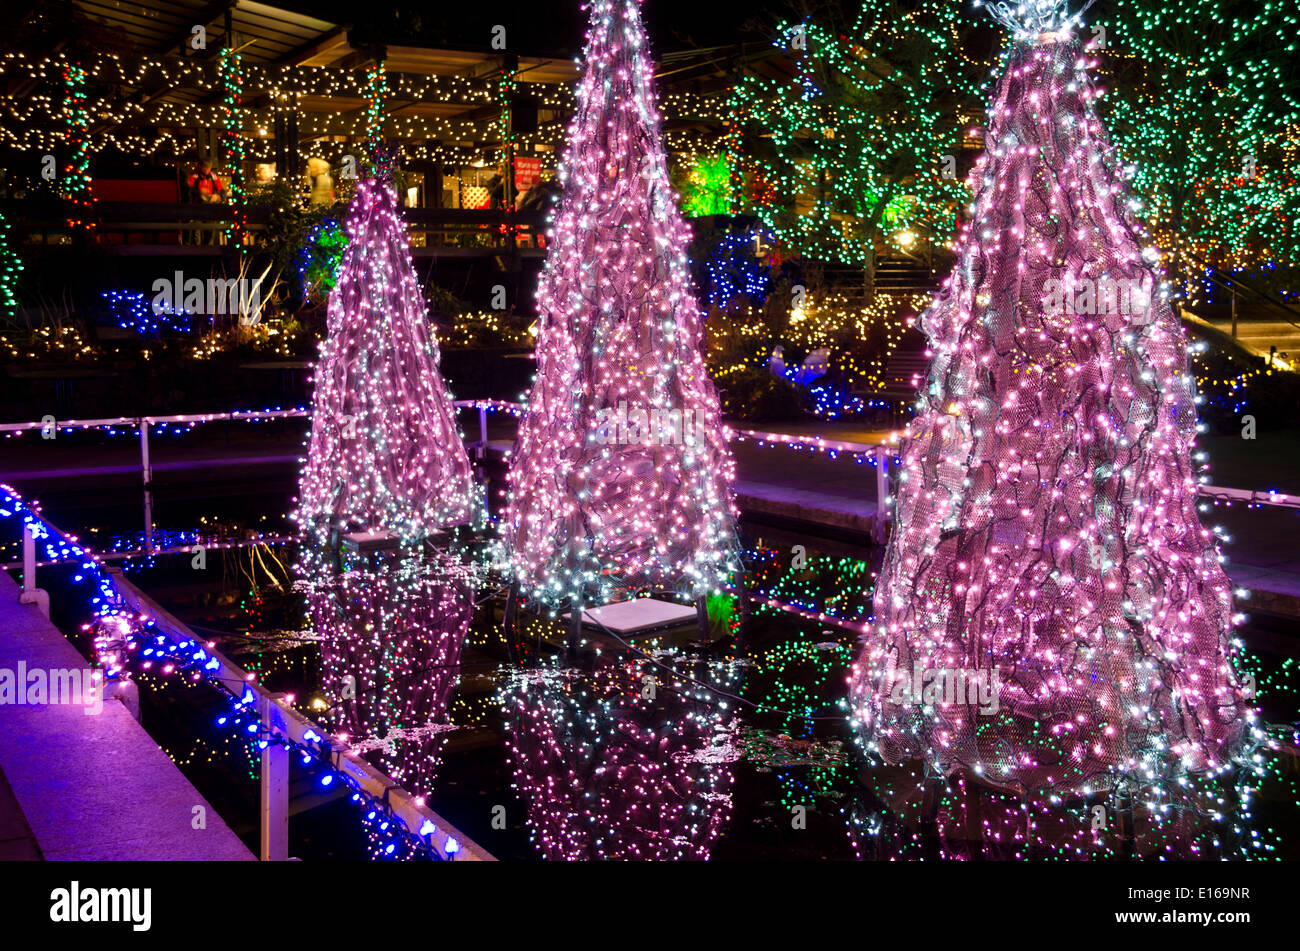 Belles lumières d'arbre de Noël et d'autres vacances d'illuminations à VanDusen Botanical Garden, à Vancouver, Colombie-Britannique, Canada. Banque D'Images